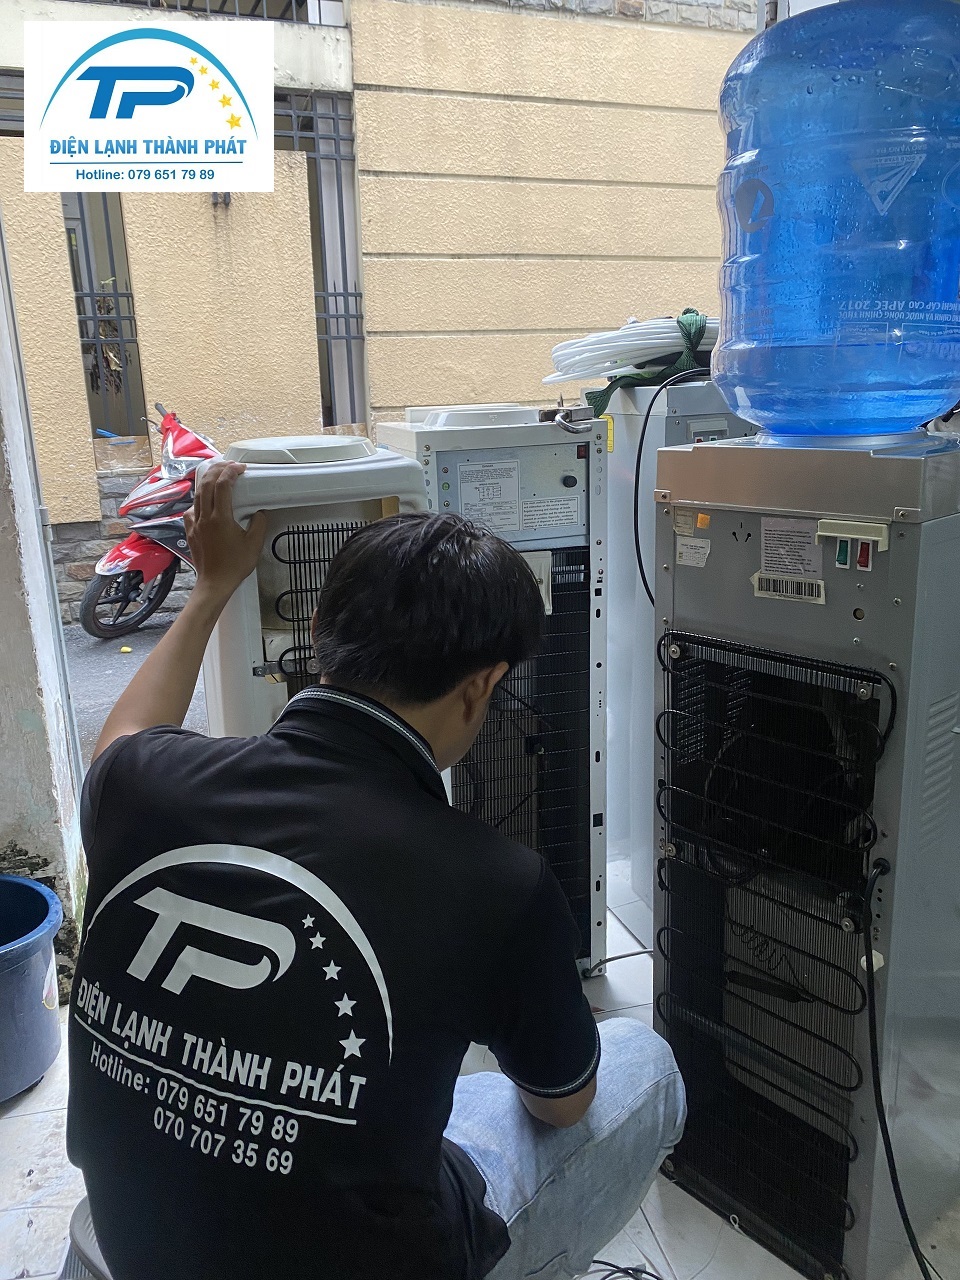 Thành Phát chuyên cung cấp dịch vụ sửa cây nước nóng lạnh Bình Tân đáng tin cậy.